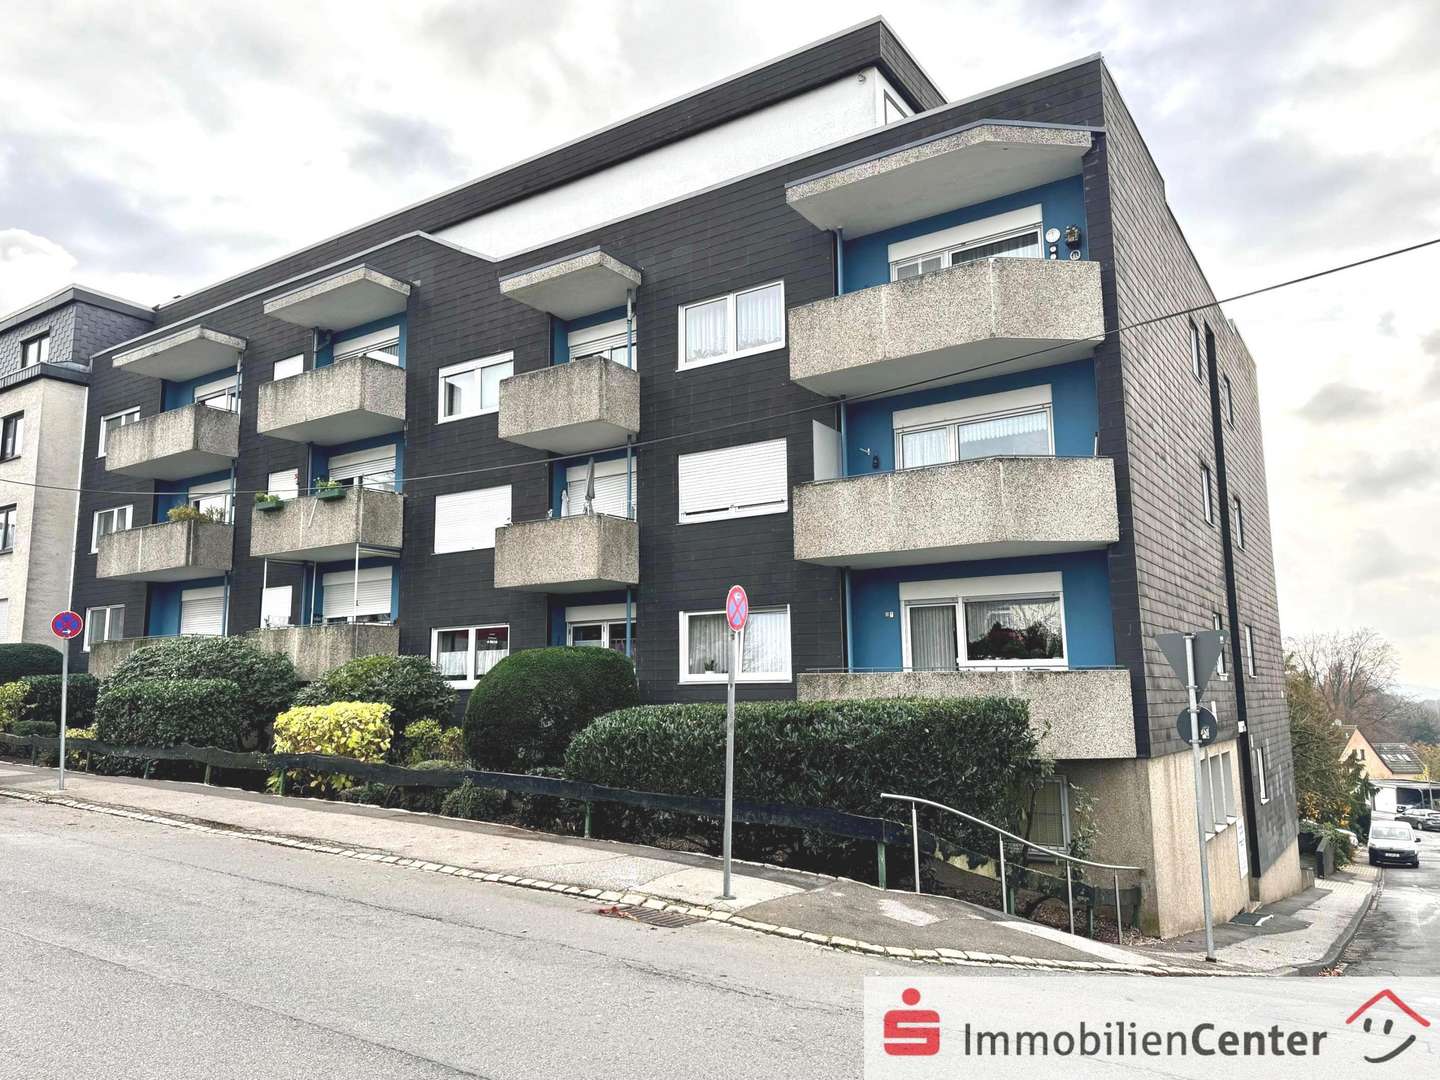 Frontbild - Mehrfamilienhaus in 42899 Remscheid mit 1615m² als Kapitalanlage kaufen